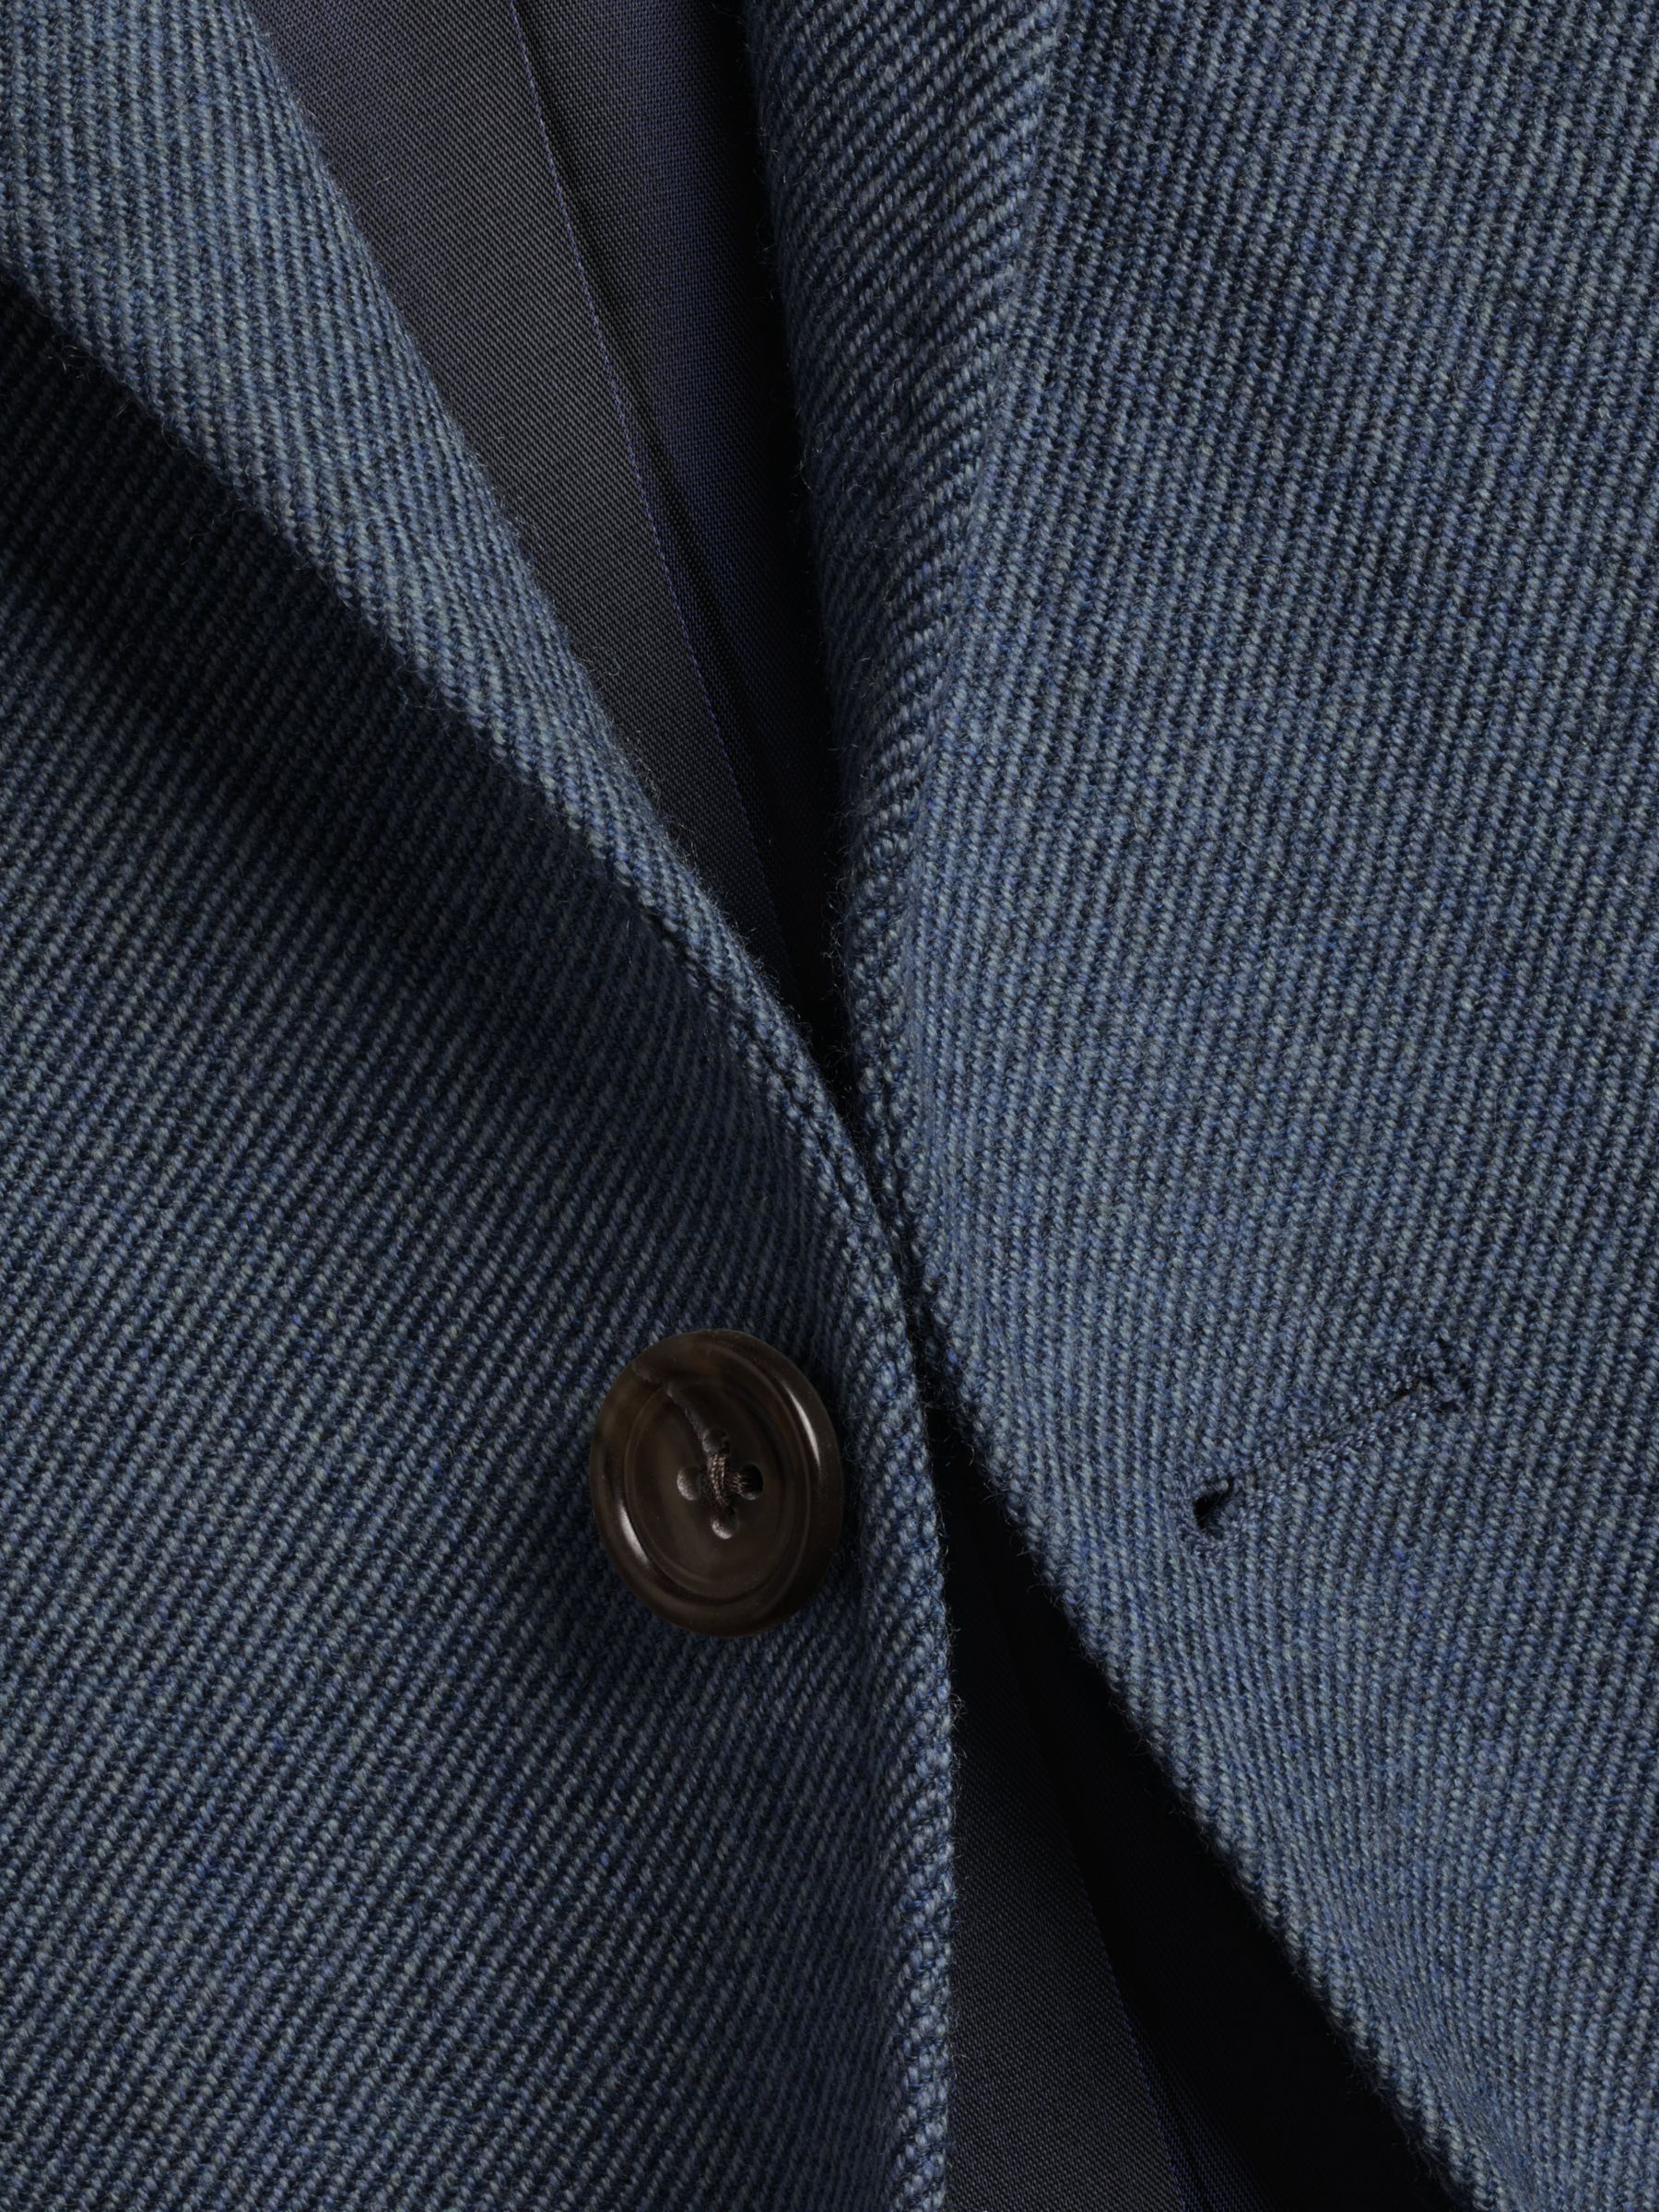 Charles Tyrwhitt Classic fit Wool Twill Texture Jacket, Mid Blue, 46R